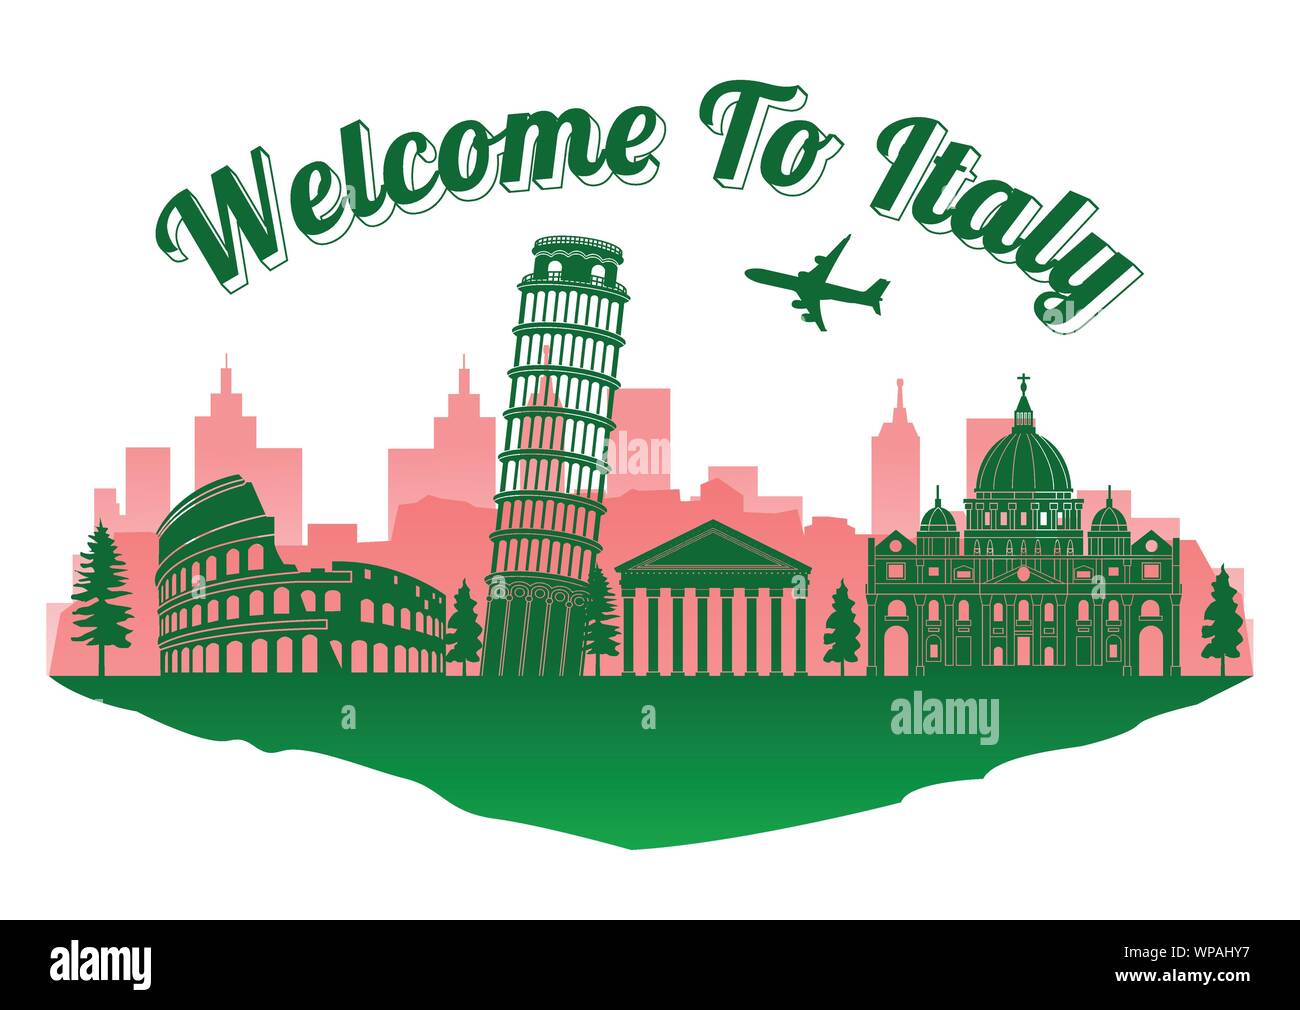 Italien top Wahrzeichen Silhouette Style auf der Insel, willkommen in Italien Text, Reise und Tourismus, Vector Illustration, Farbe der Flagge design Stock Vektor